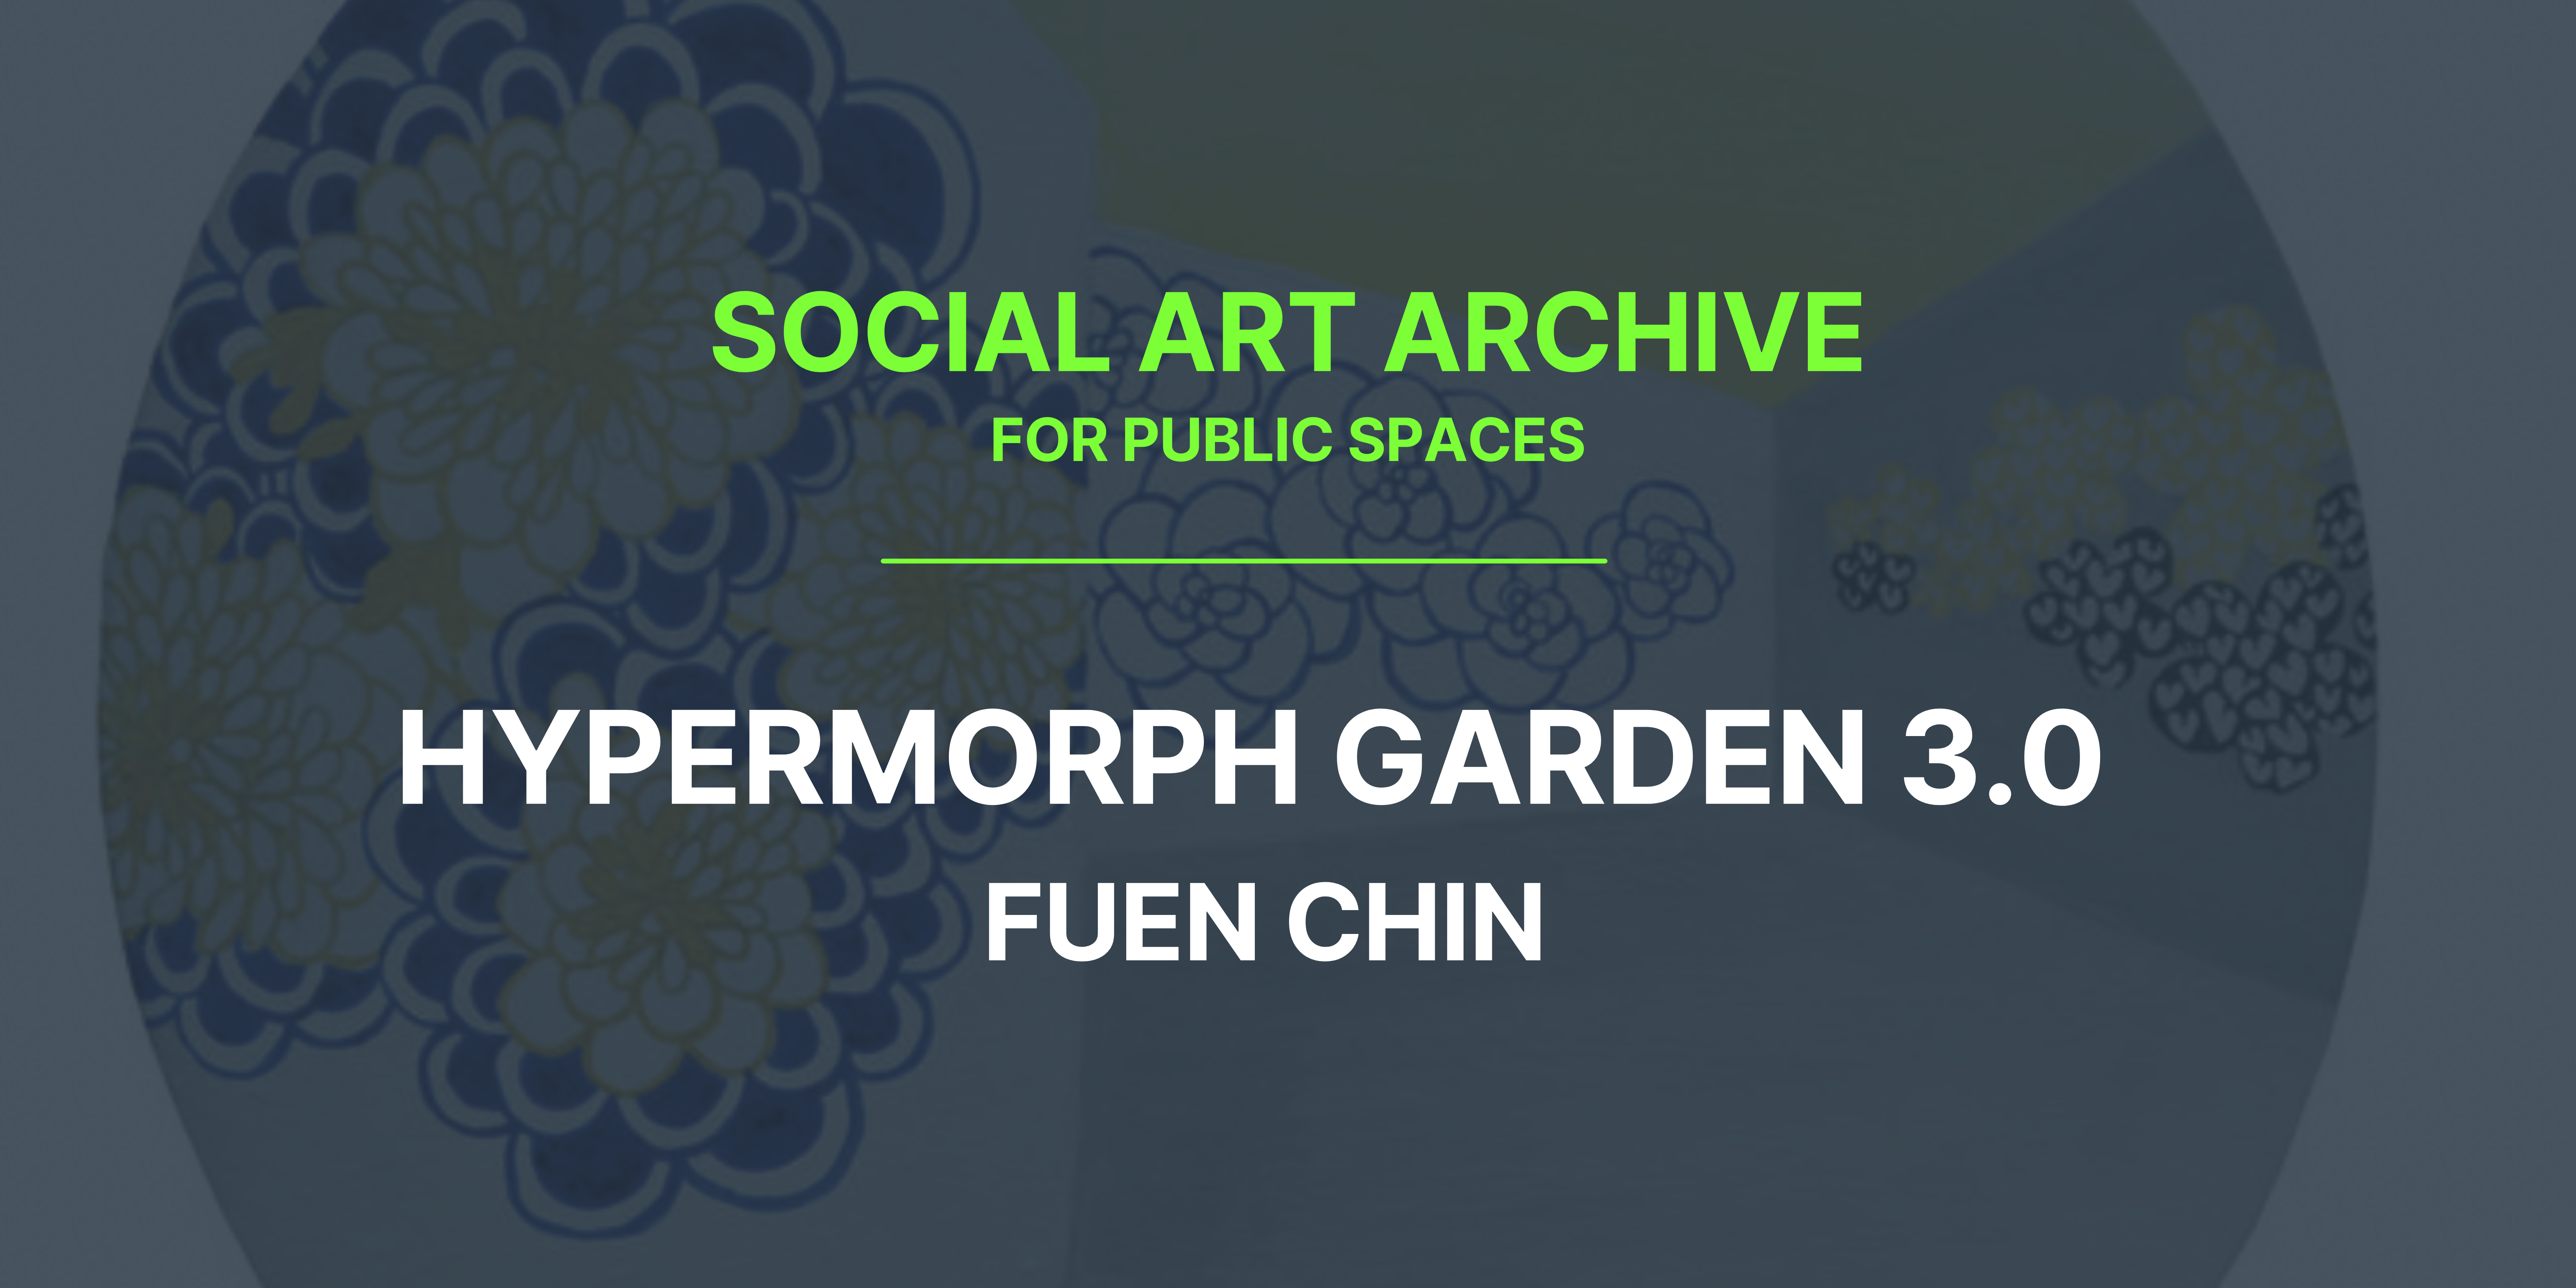 Social Art for Public Spaces – Hypermorph Garden 3.0 by Fuen Chin